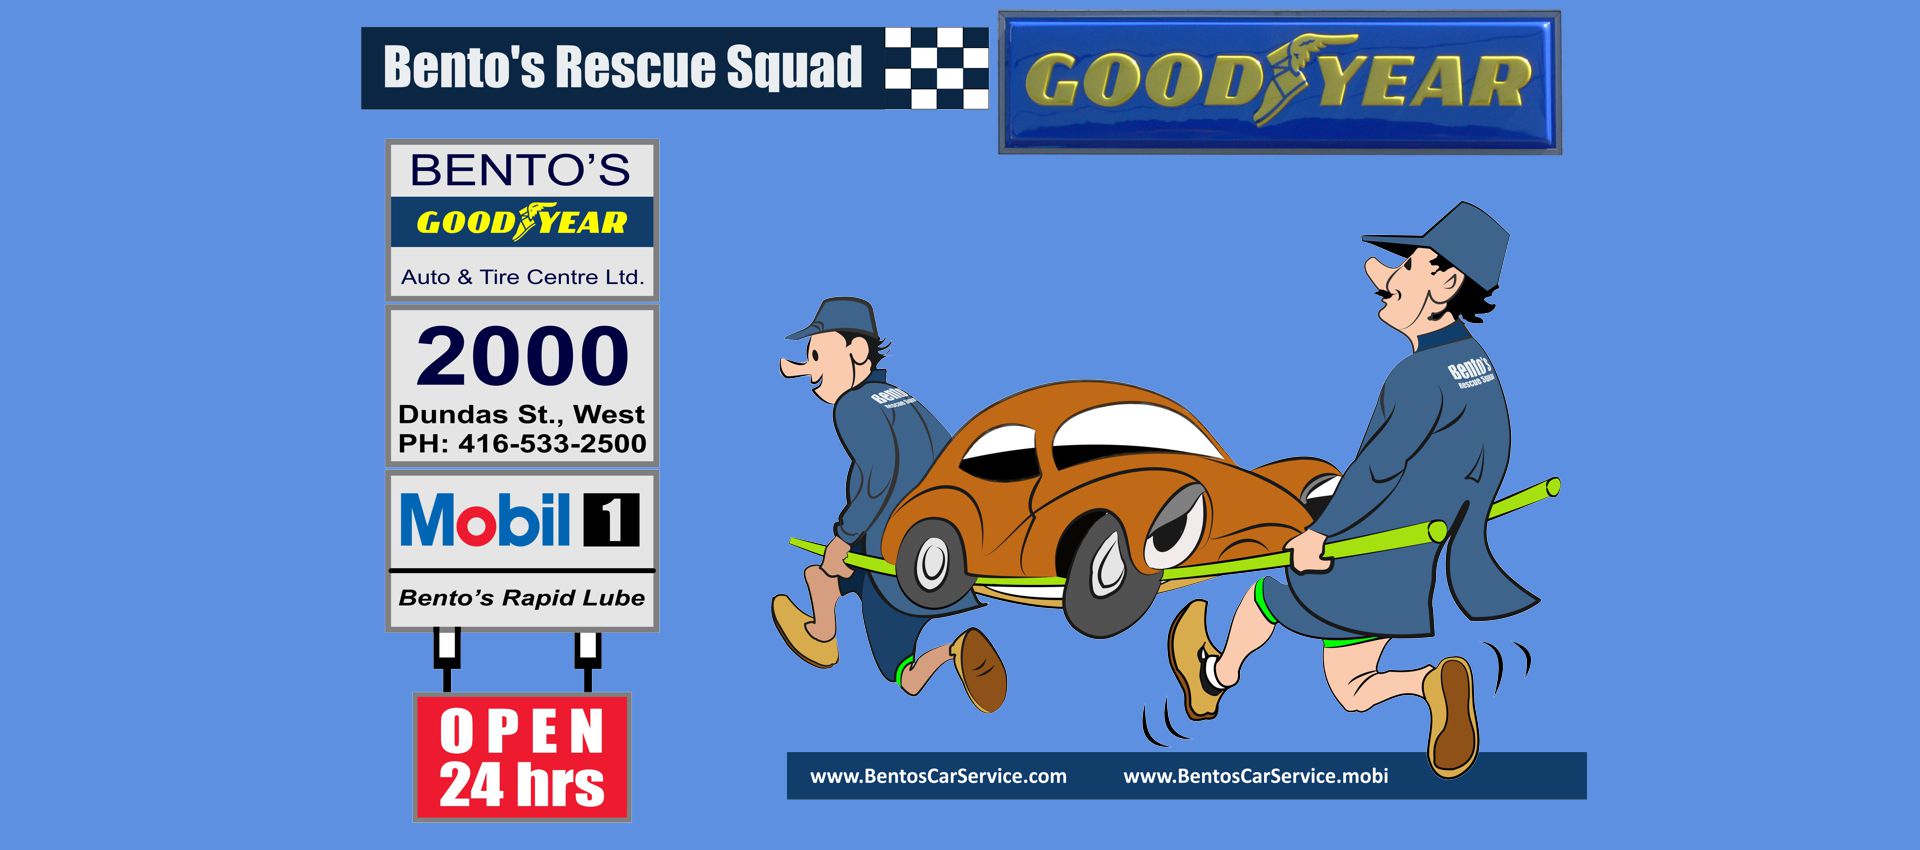 Bento's Rescue Squad - 24 Hours - 2000 Dundas Stret West, Ph: 416-533-2500